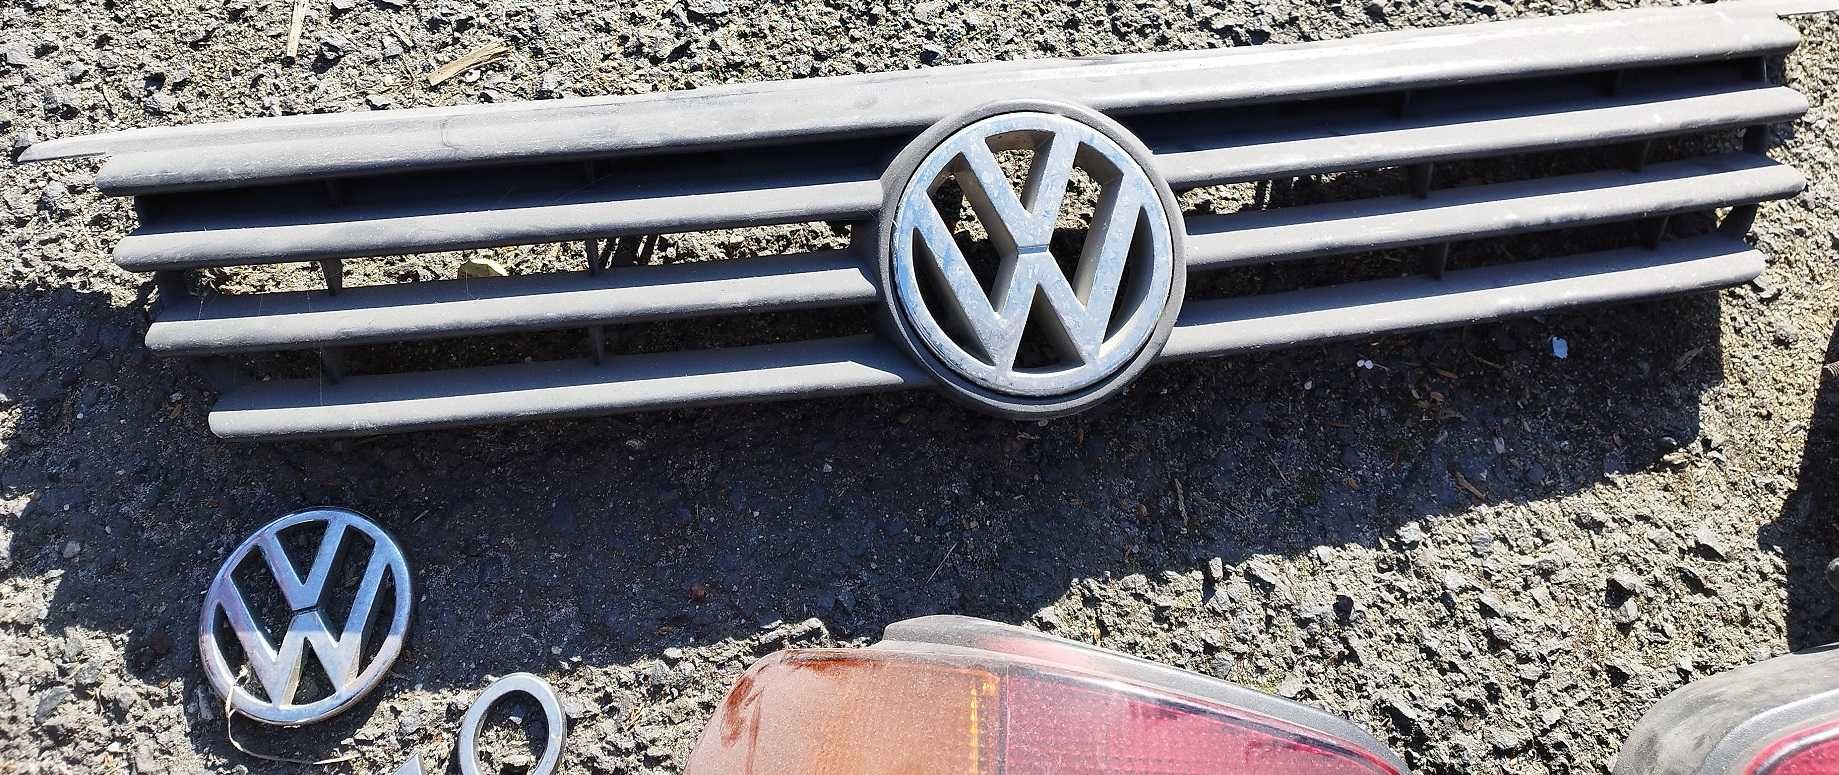 Zestaw części do VW Polo 6n1 lampy grill logo napis